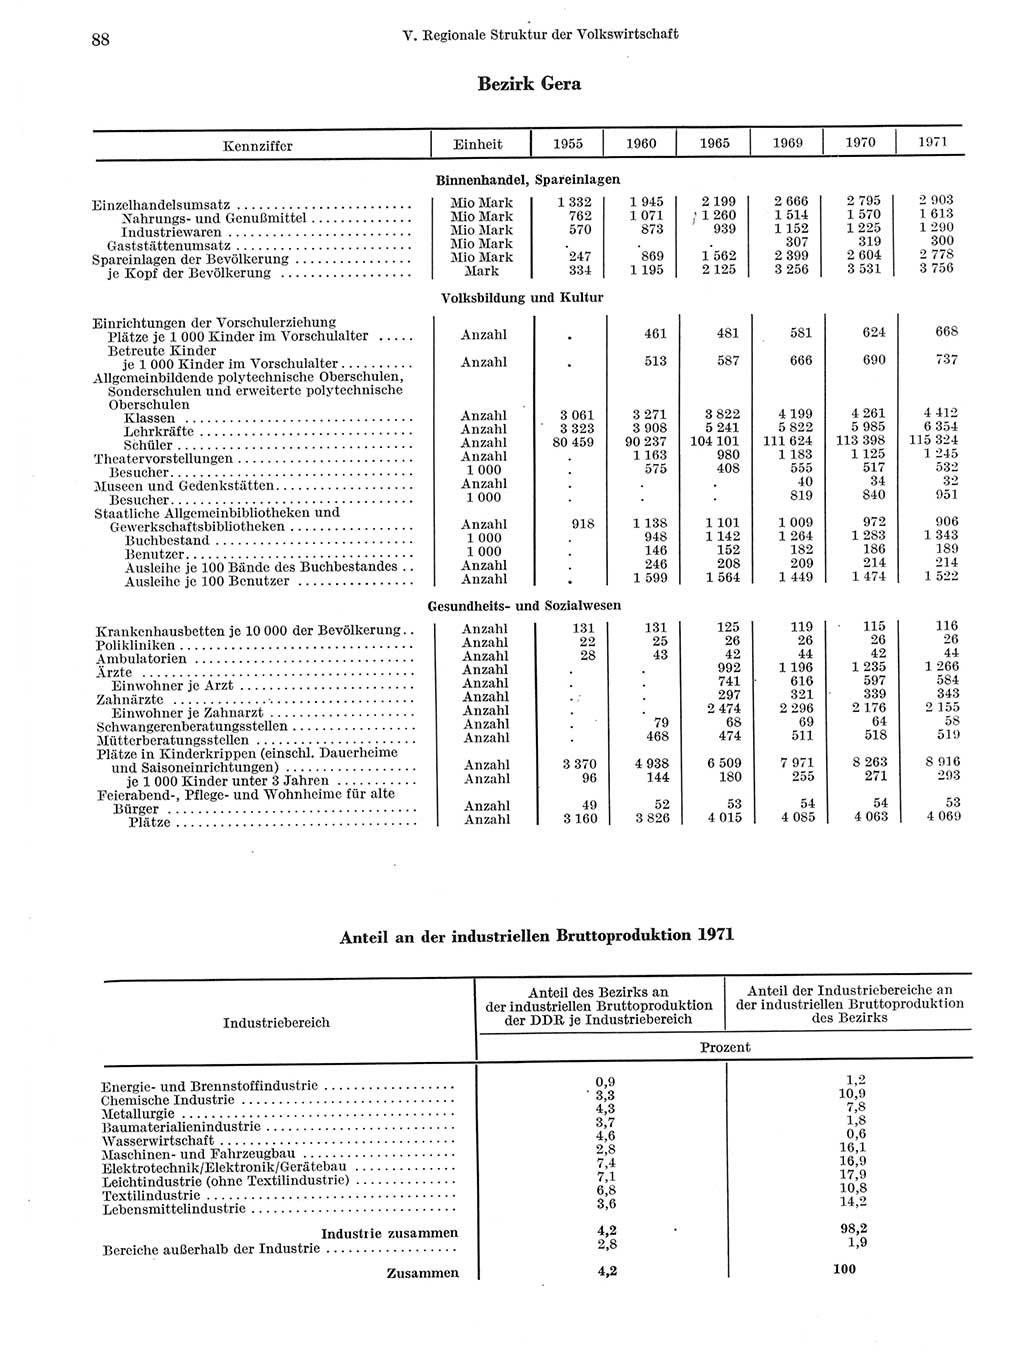 Statistisches Jahrbuch der Deutschen Demokratischen Republik (DDR) 1972, Seite 88 (Stat. Jb. DDR 1972, S. 88)